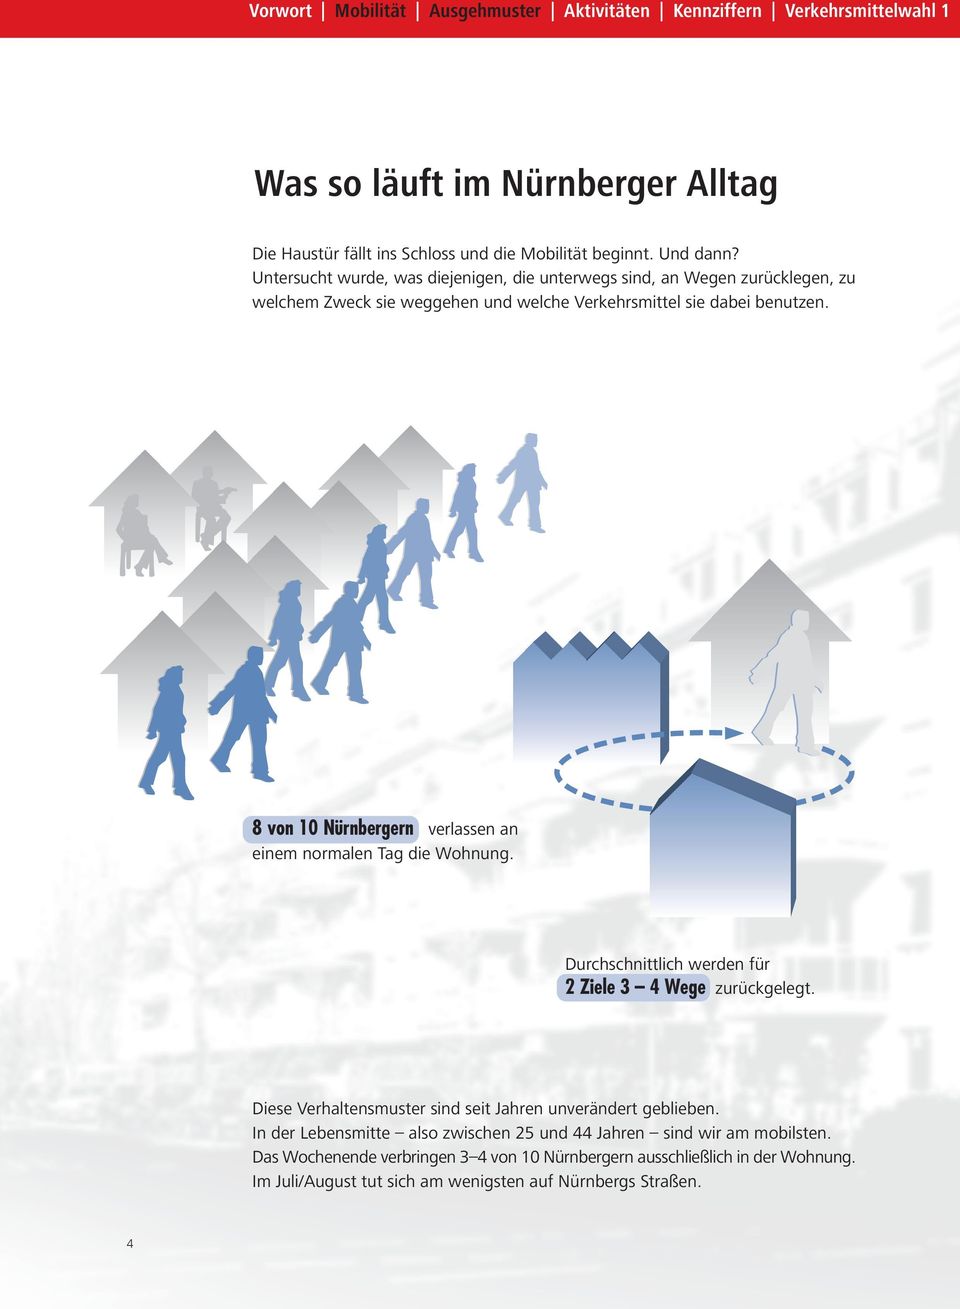 8 von 10 Nürnbergern verlassen an einem normalen Tag die Wohnung. Durchschnittlich werden für 2 Ziele 3 4 Wege zurückgelegt.